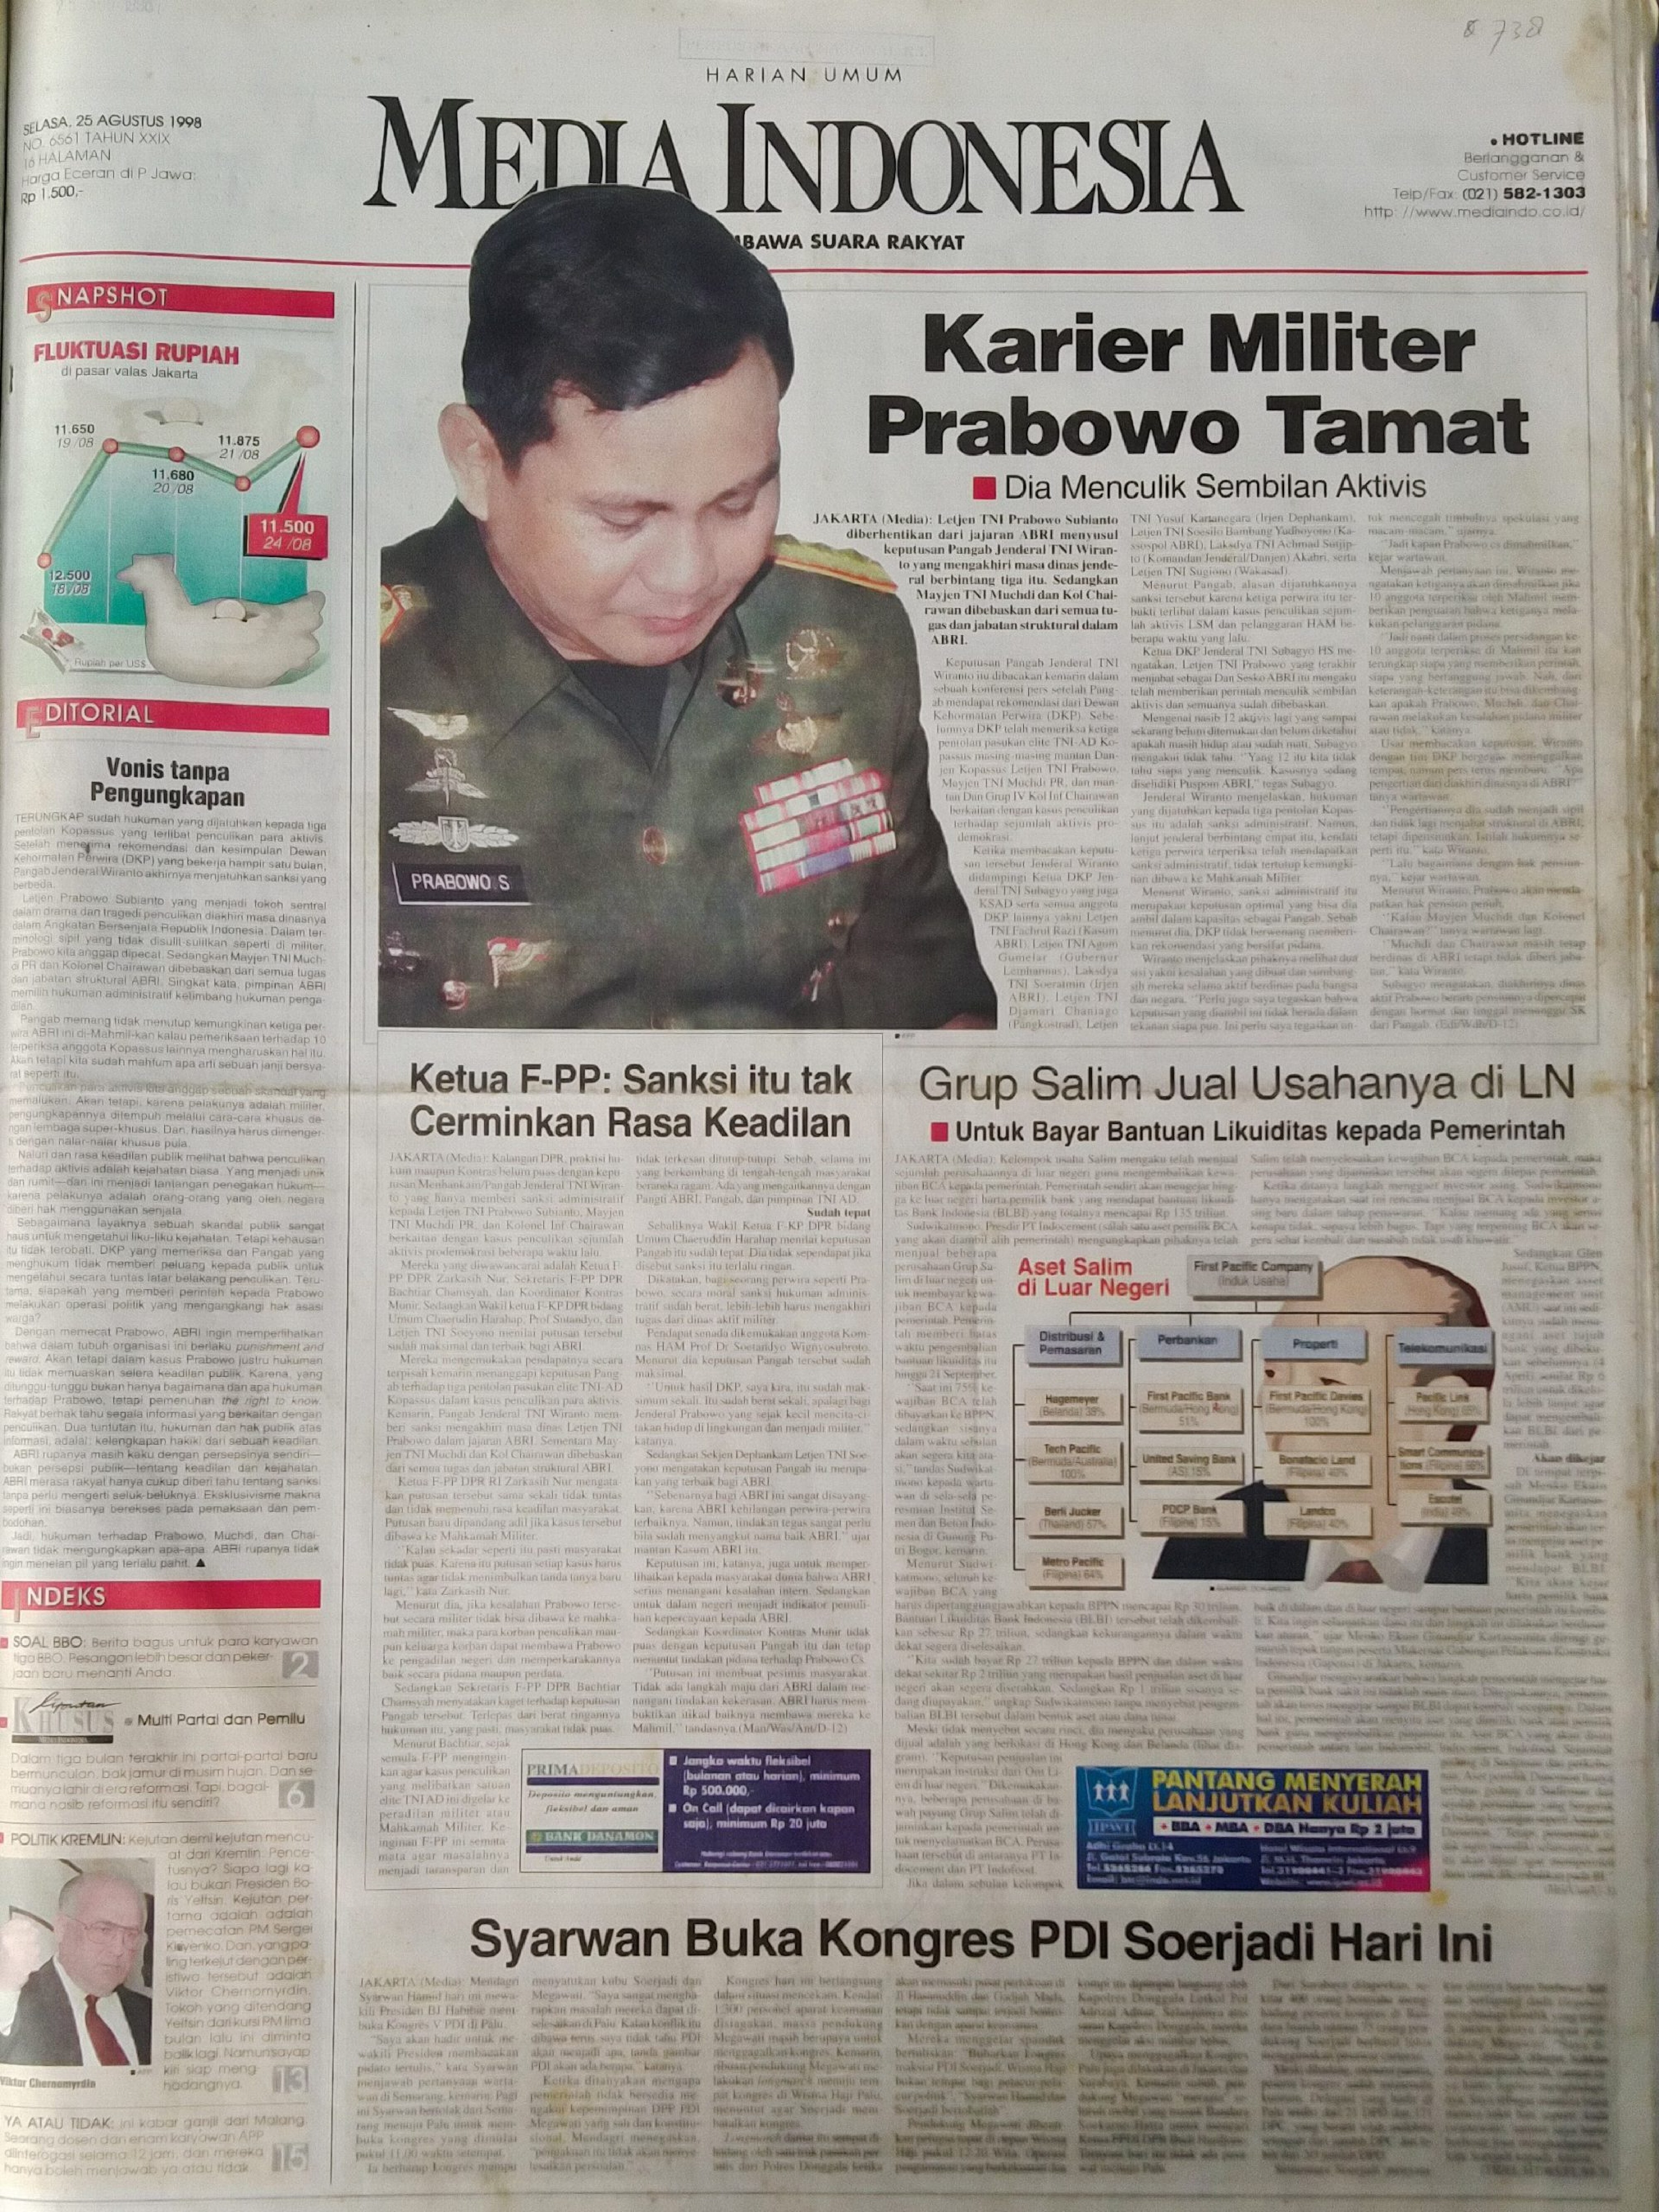 1998-08-25_Militer_Hukum_Penculik-Aktivis_Karier-Prabowo-Tamat_Media-Indonesia_01-scaled�